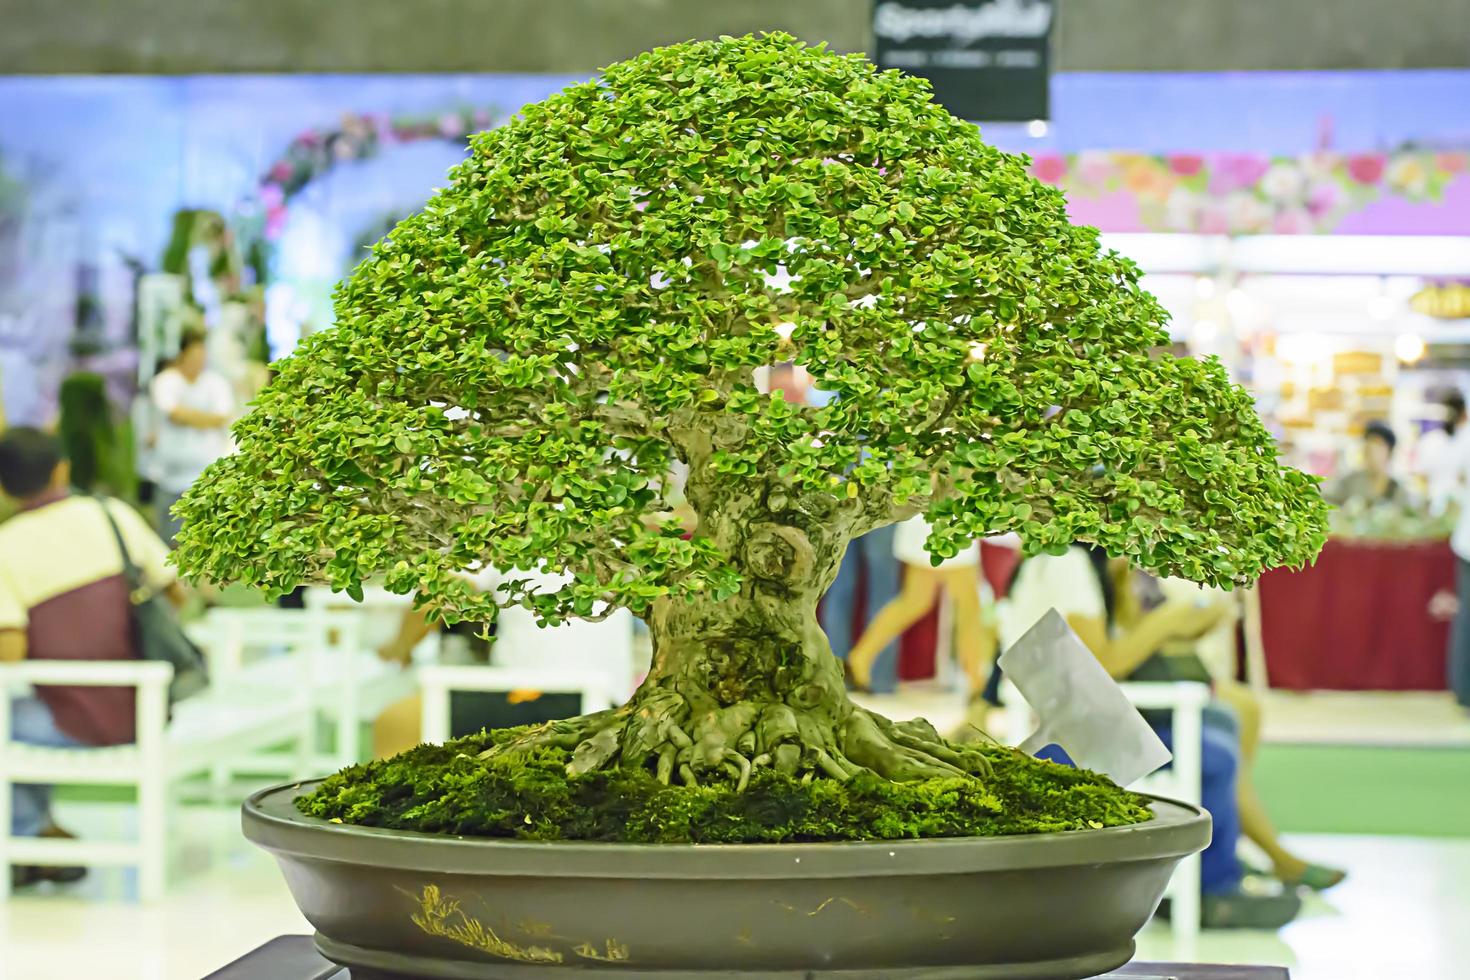 pequena árvore, cultivada com técnica tailandesa de bonsai. foto